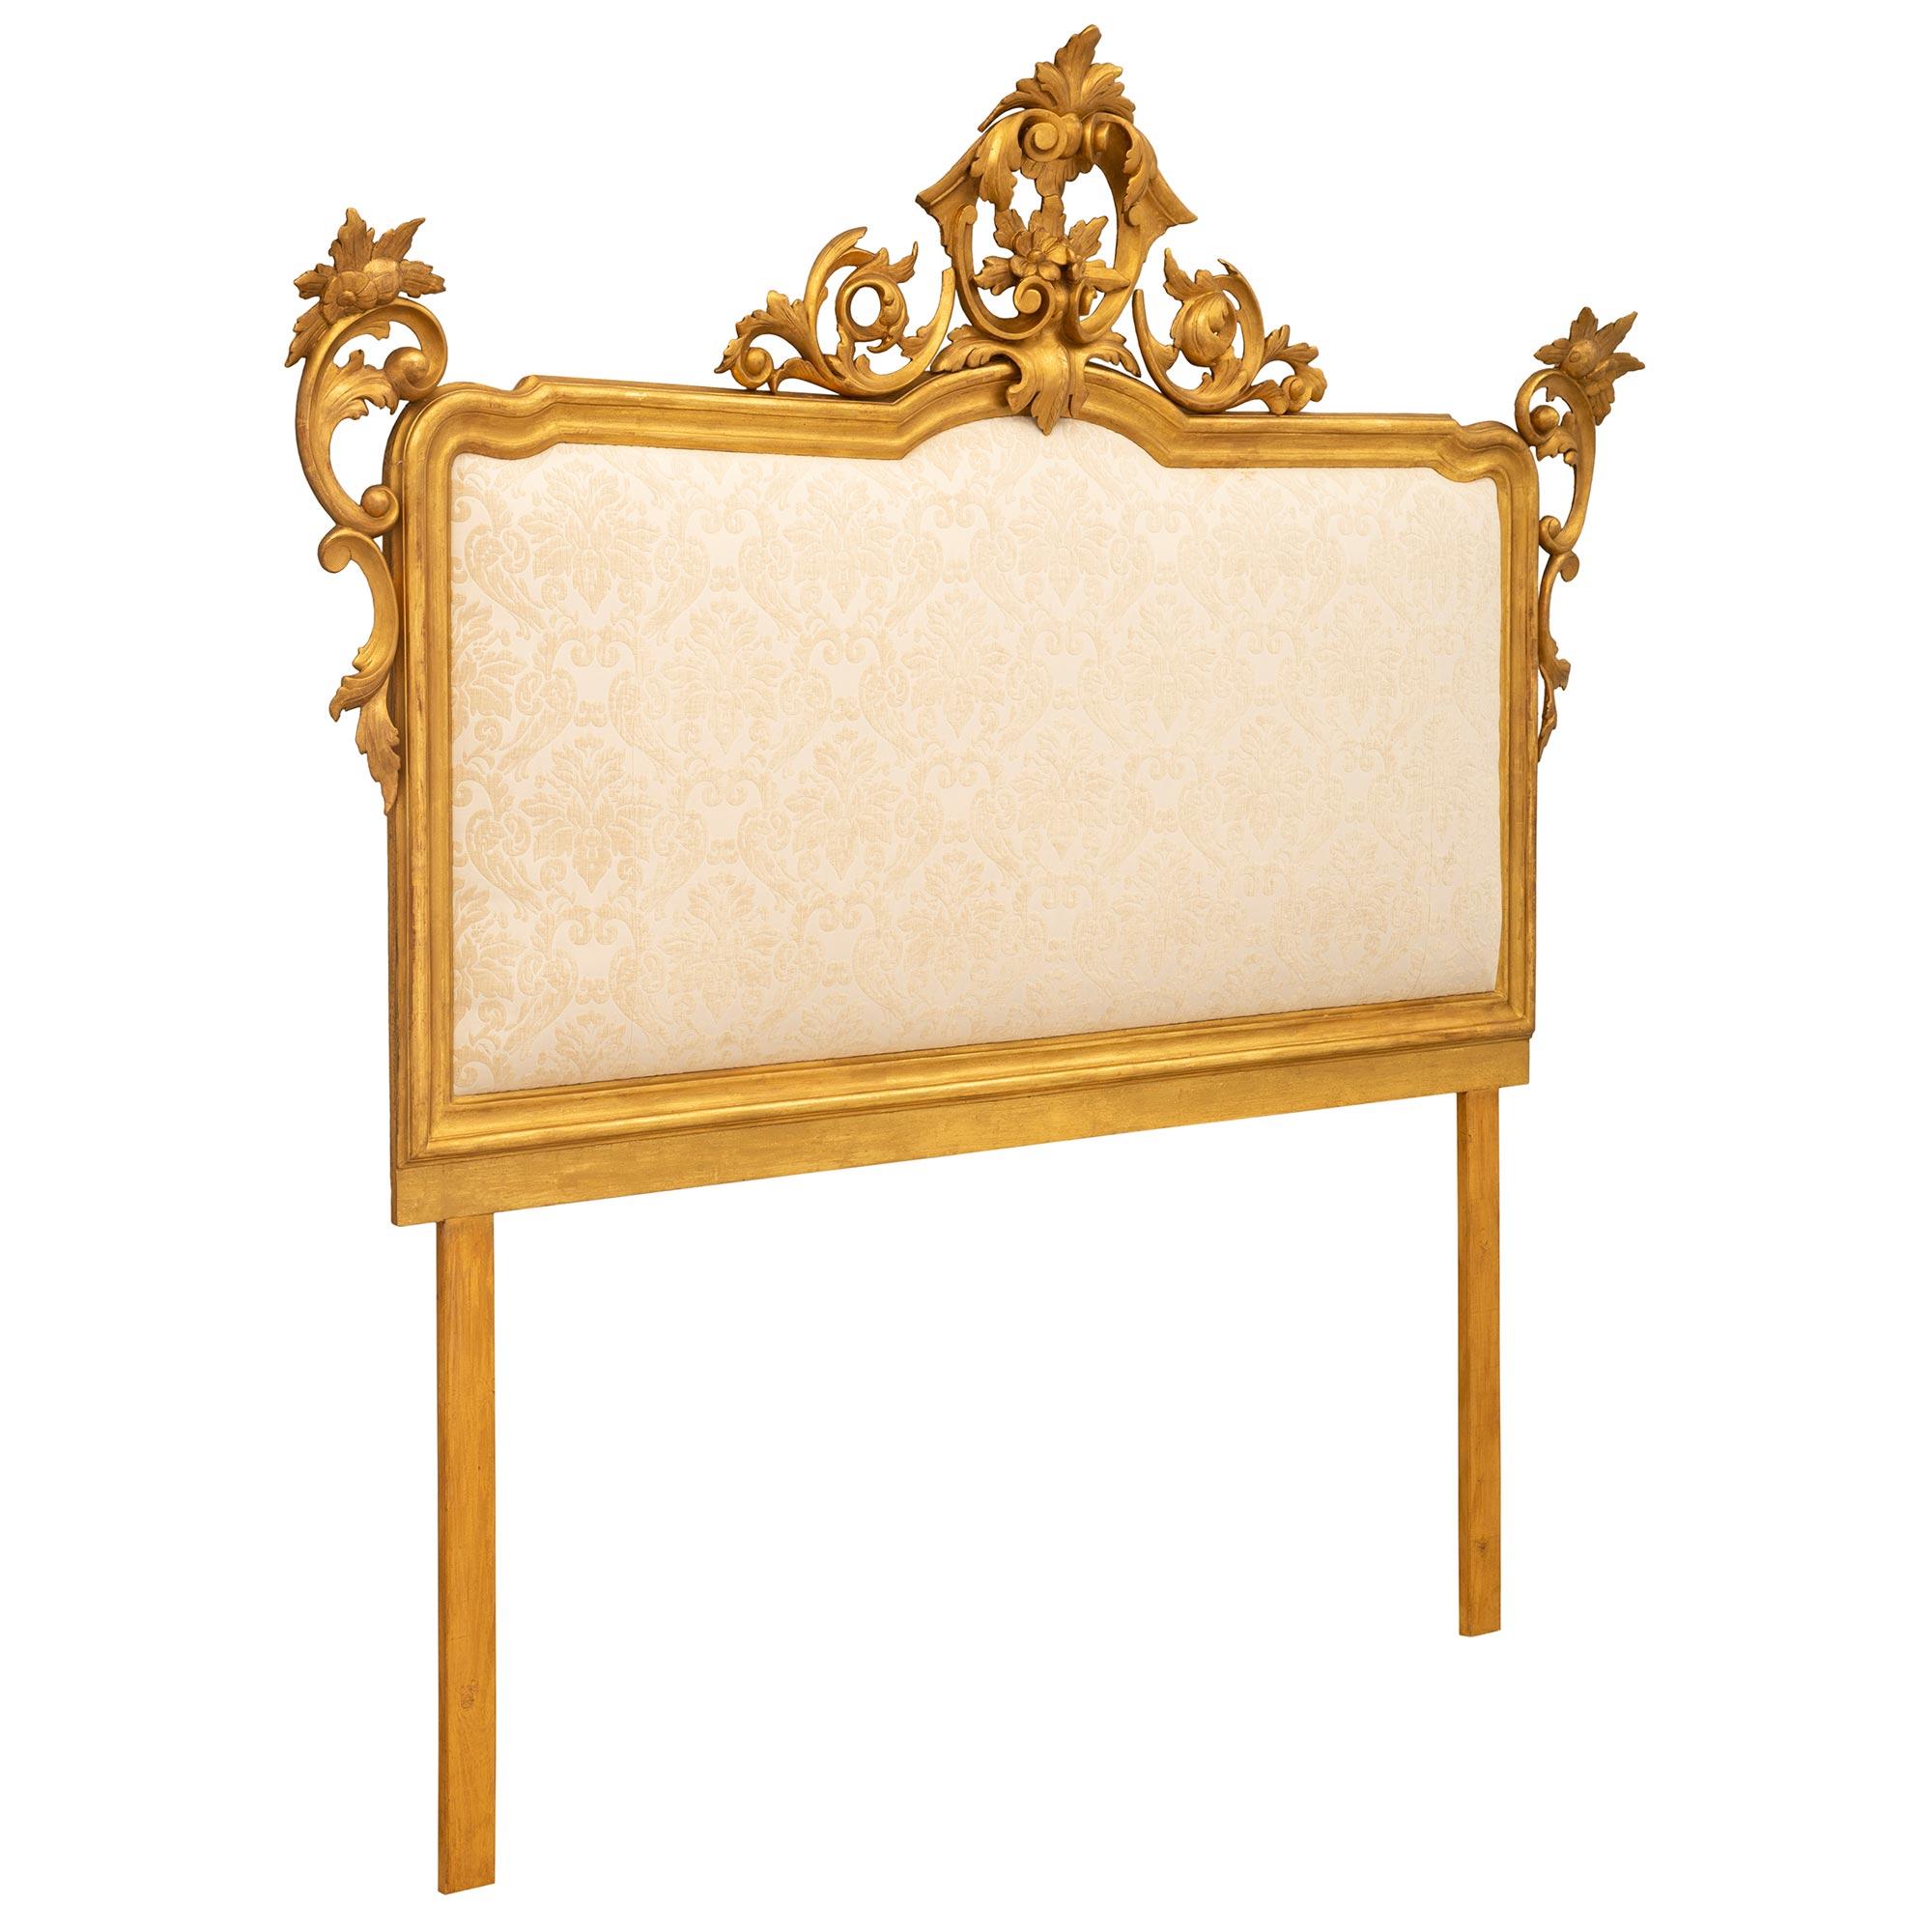 Exceptionnelle tête rembourrée de style baroque italien du XIXe siècle en bois doré. La tête de lit est encadrée d'une élégante bordure chinée enveloppante avec de magnifiques éléments feuillus percés et enroulés richement sculptés de chaque côté.